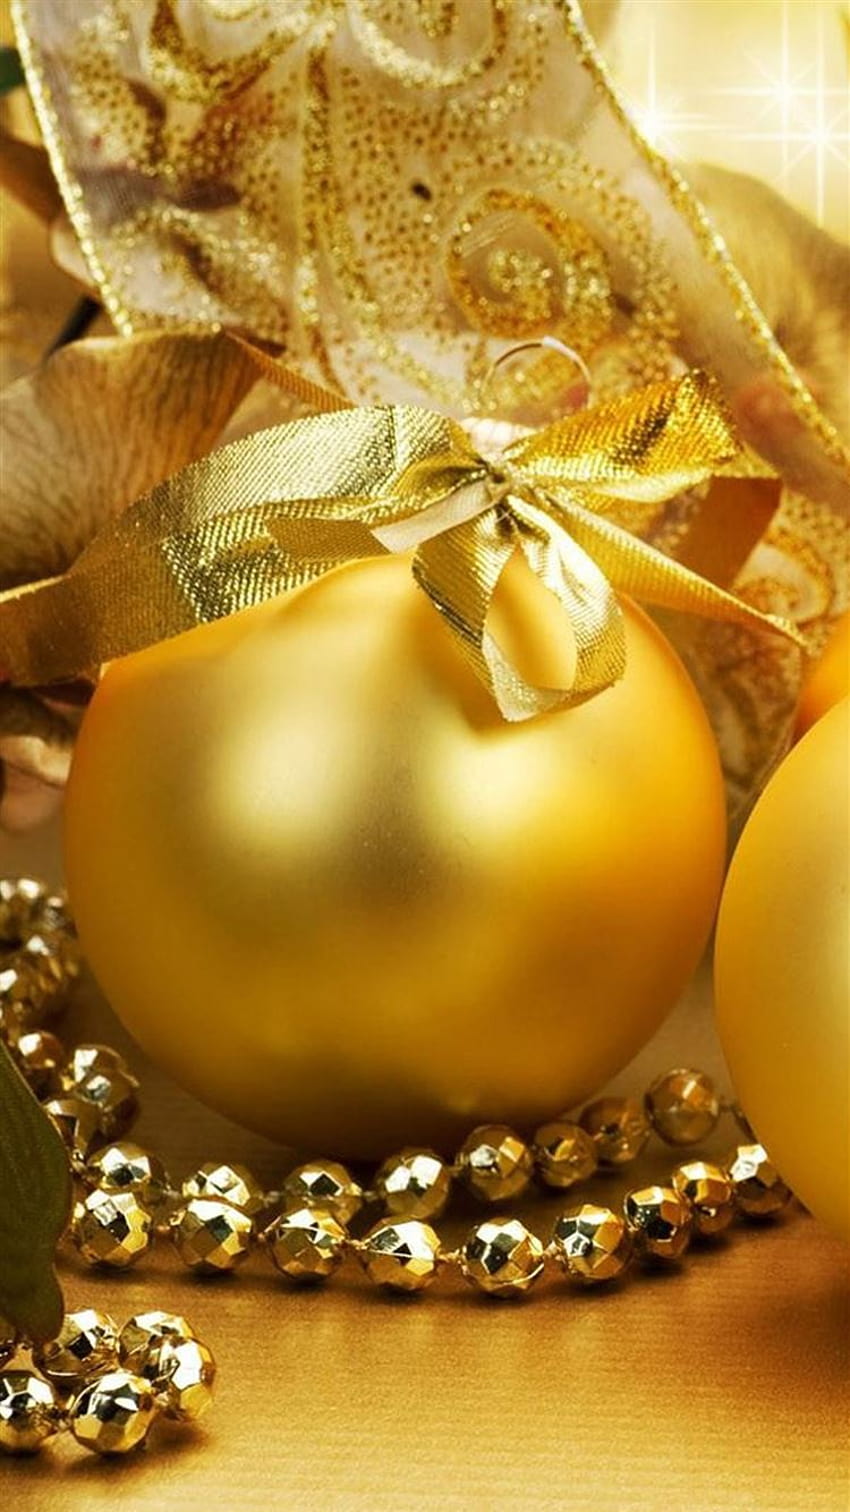 Christmas Golden Egg Ball iPhone 8, christmas golden balls HD phone wallpaper